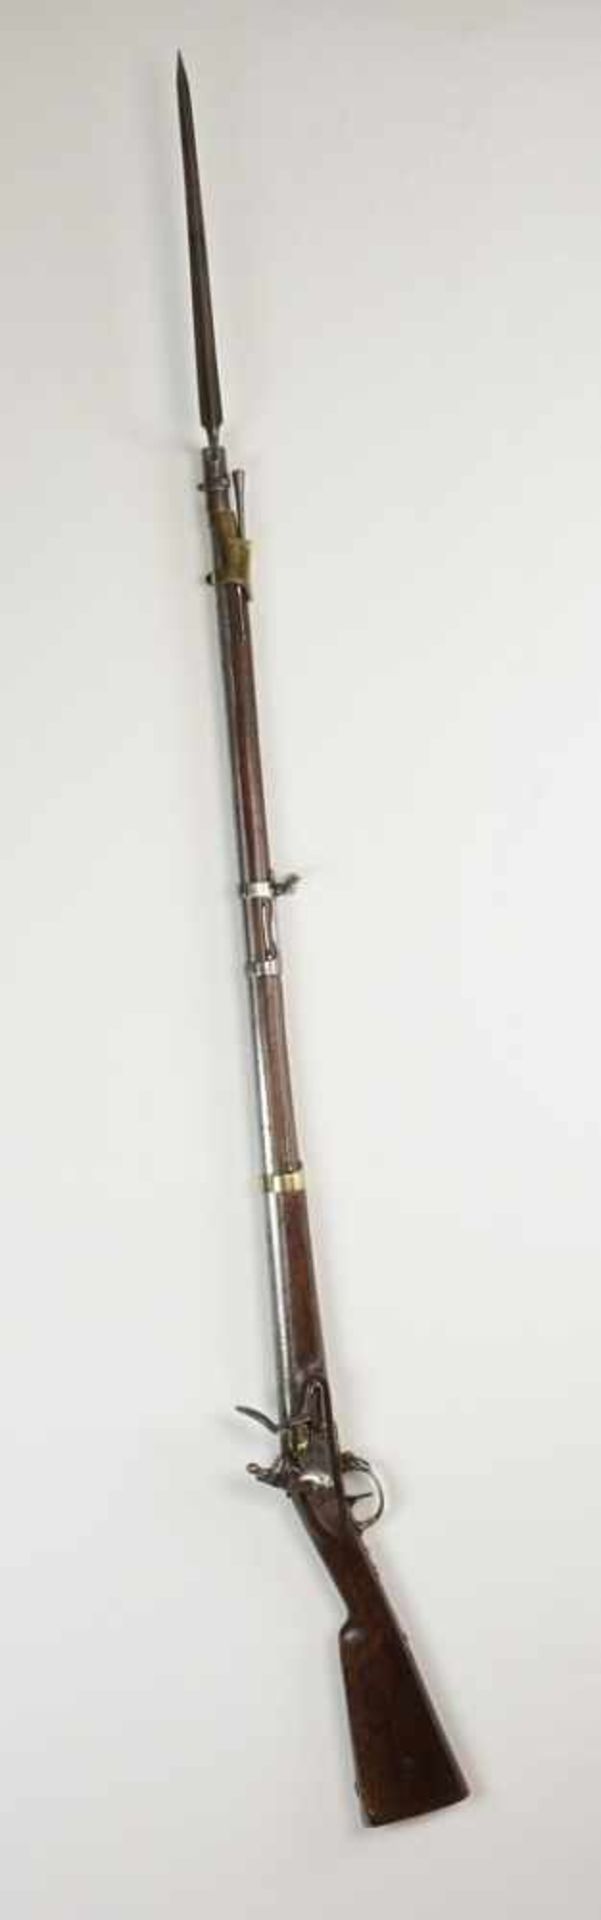 Tulle Dragoner Steinschlossgewehr mit Bajonett Frankreich, 18151. französisches Kaiserreich, - Bild 4 aus 9